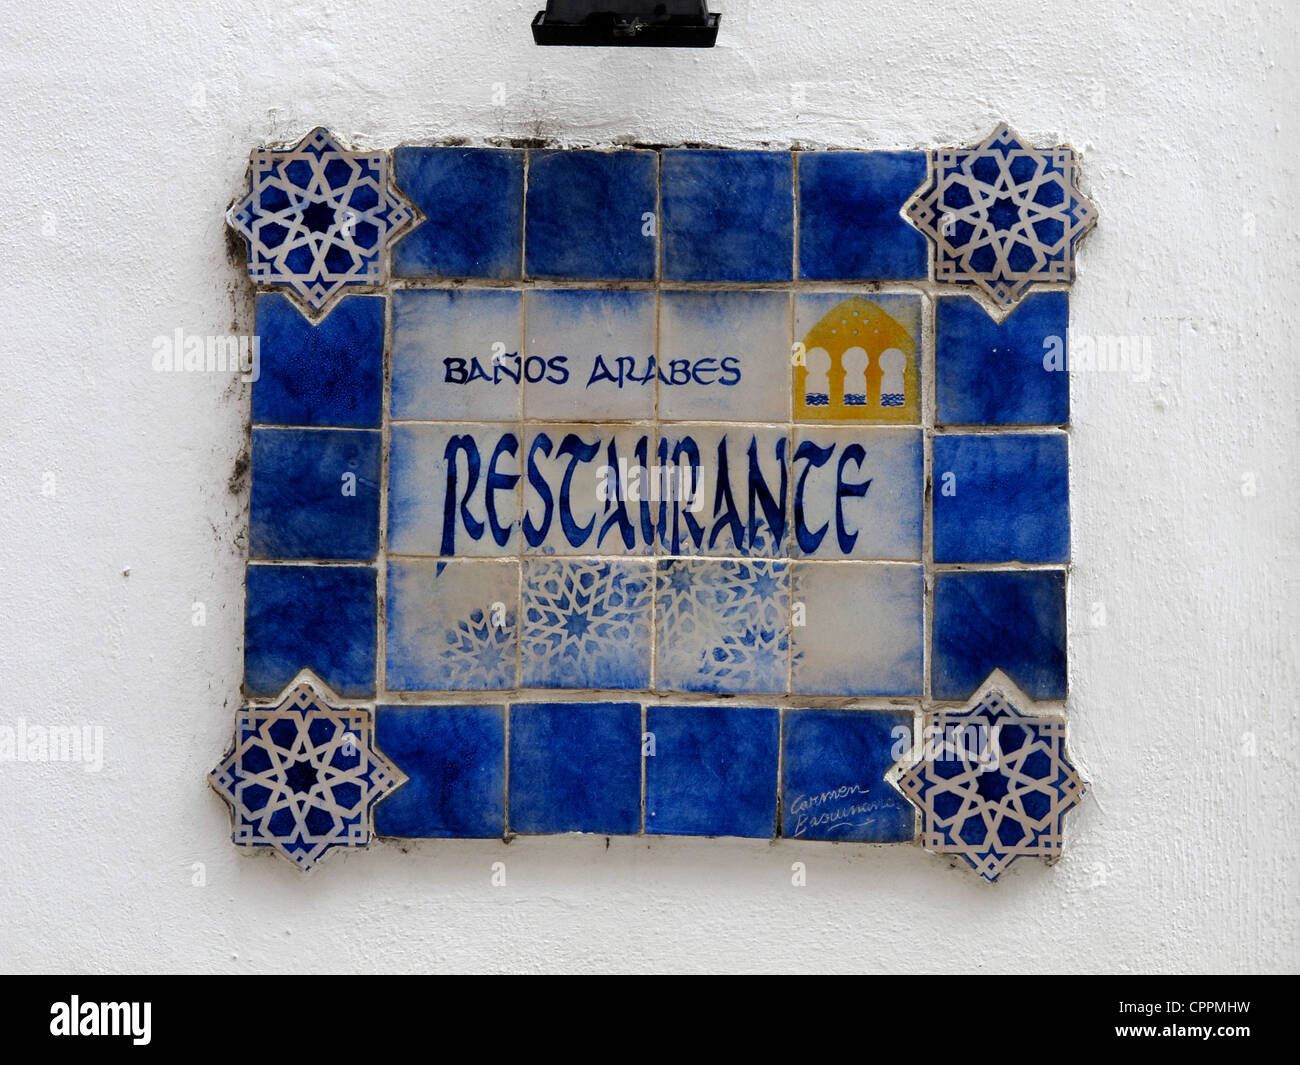 España Andalucía Córdoba Banos Arabes signo de cerámica Foto de stock